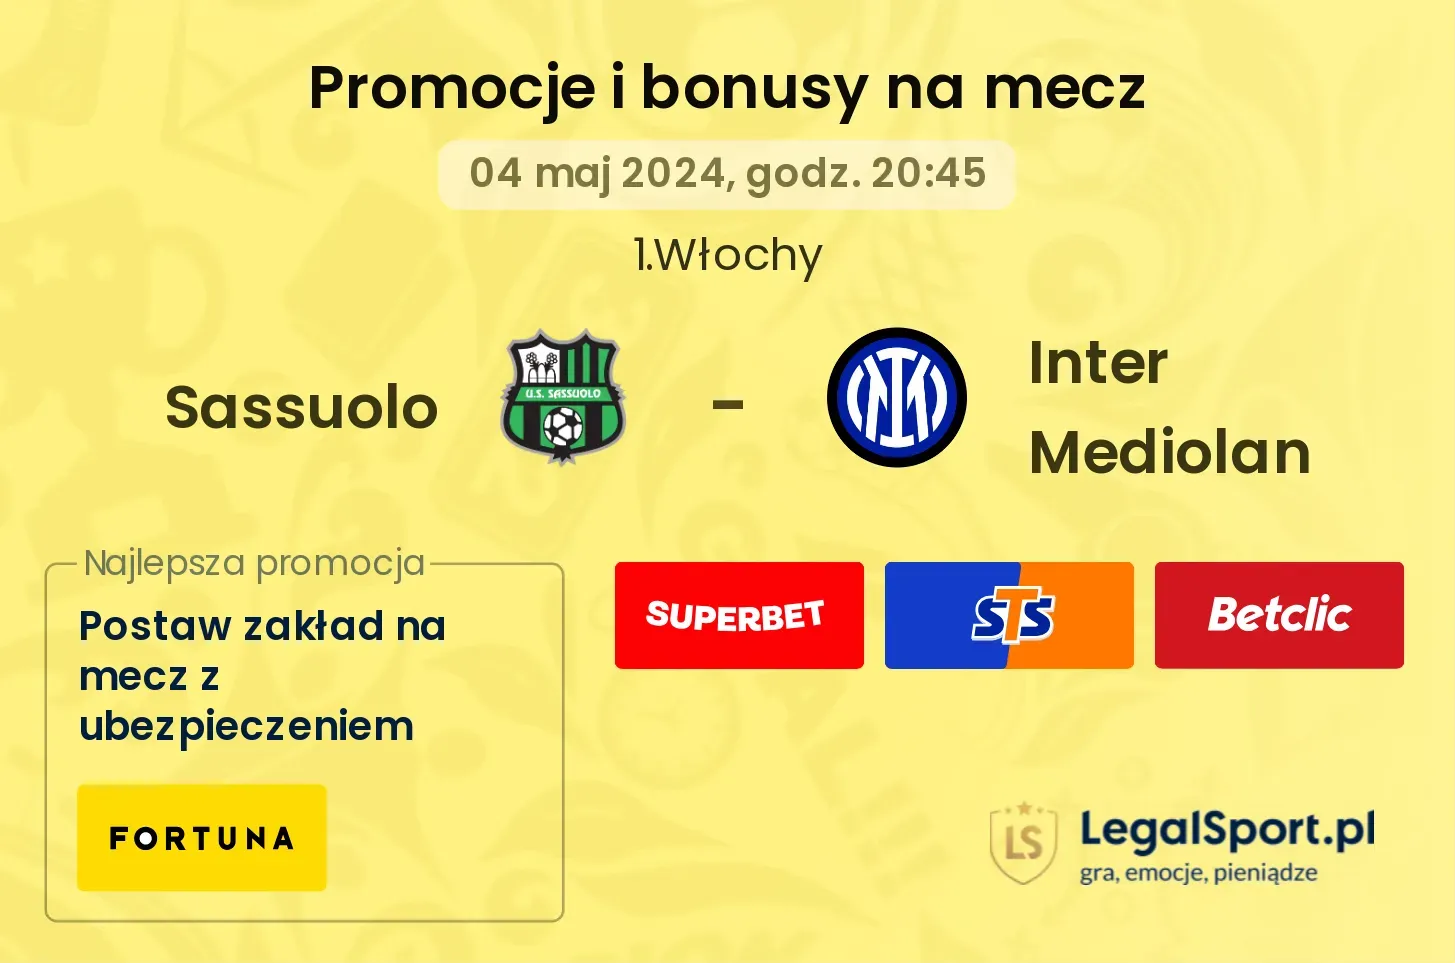 Sassuolo - Inter Mediolan promocje bonusy na mecz